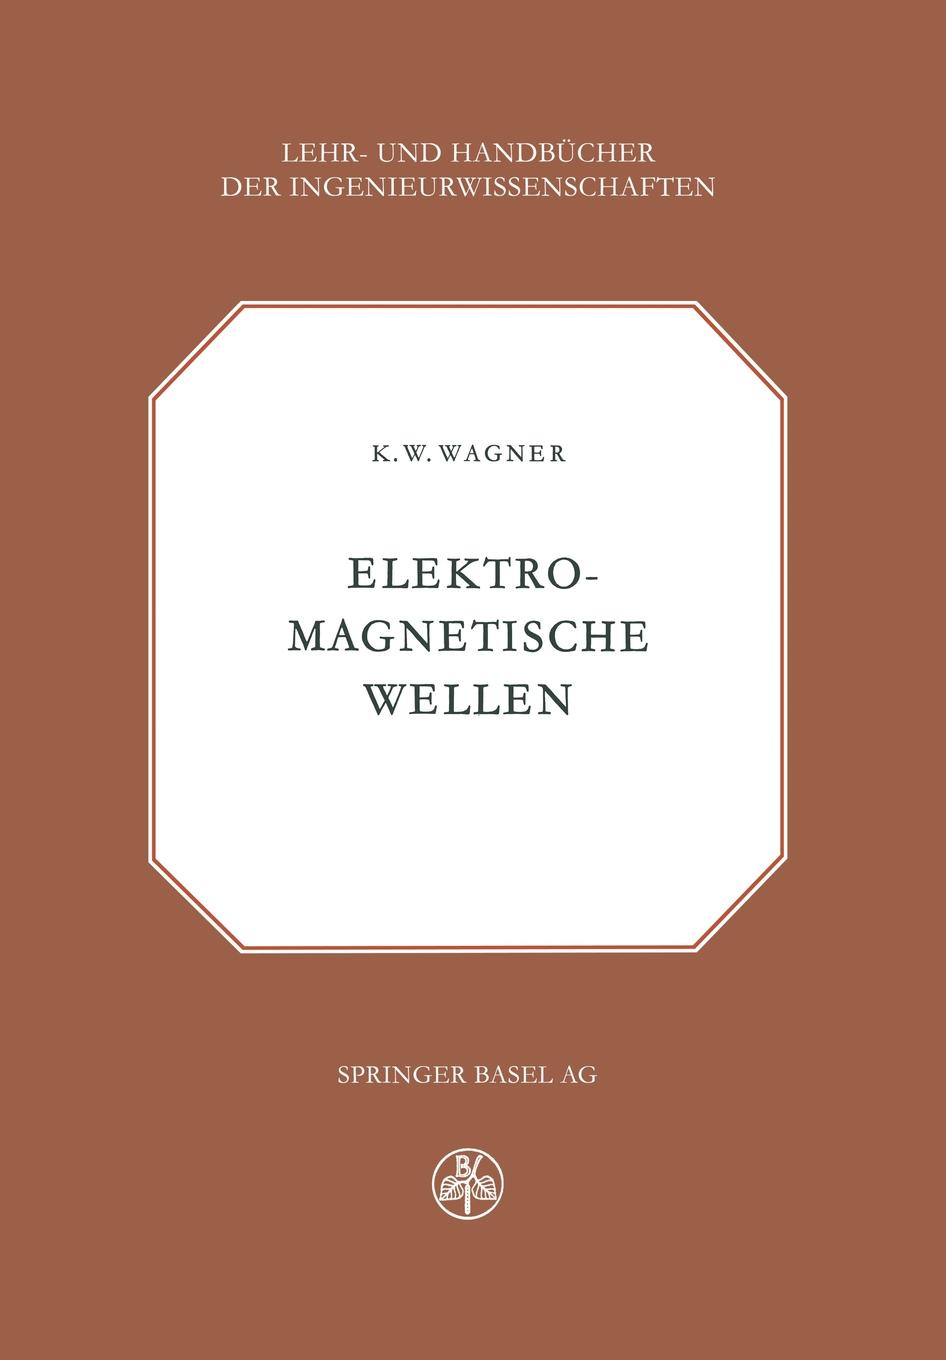 Elektromagnetische Wellen. Eine Einfuhrung in die Theorie als Grundlage fur Ihre Anwendung in der Elektrischen Ubertragungstechnik